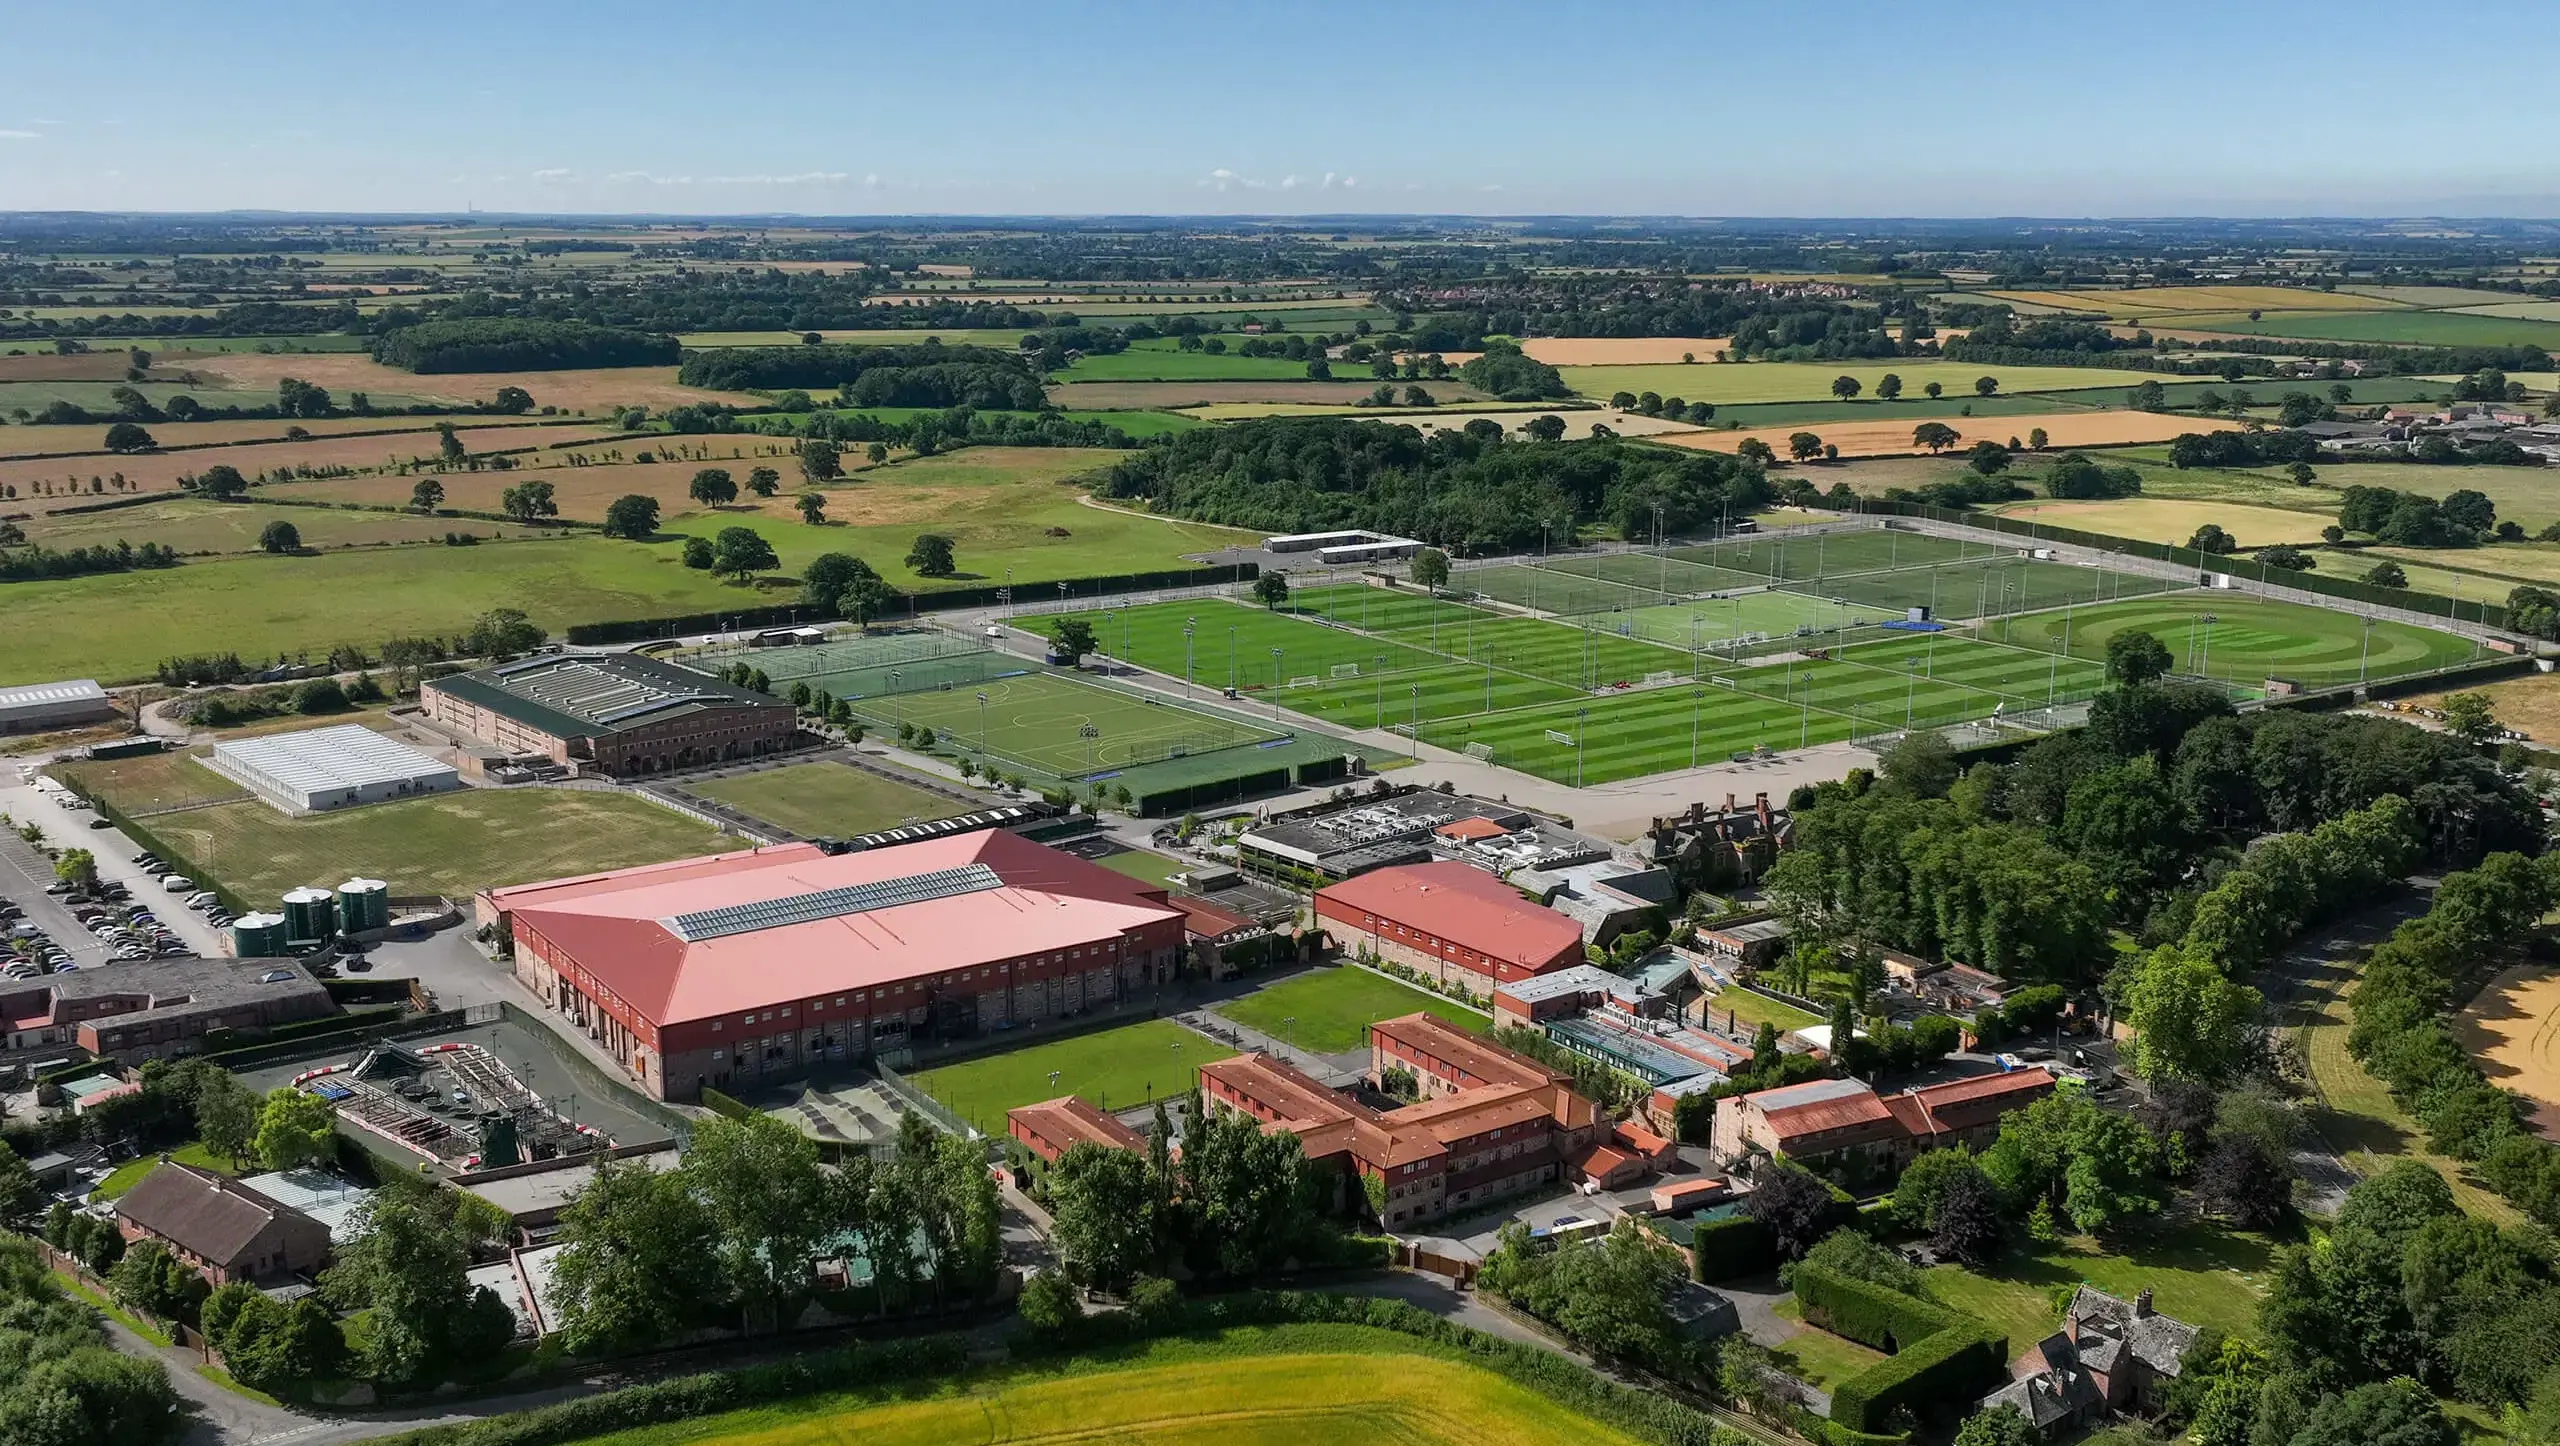 Aerial view of Queen Ethelburga's school grounds